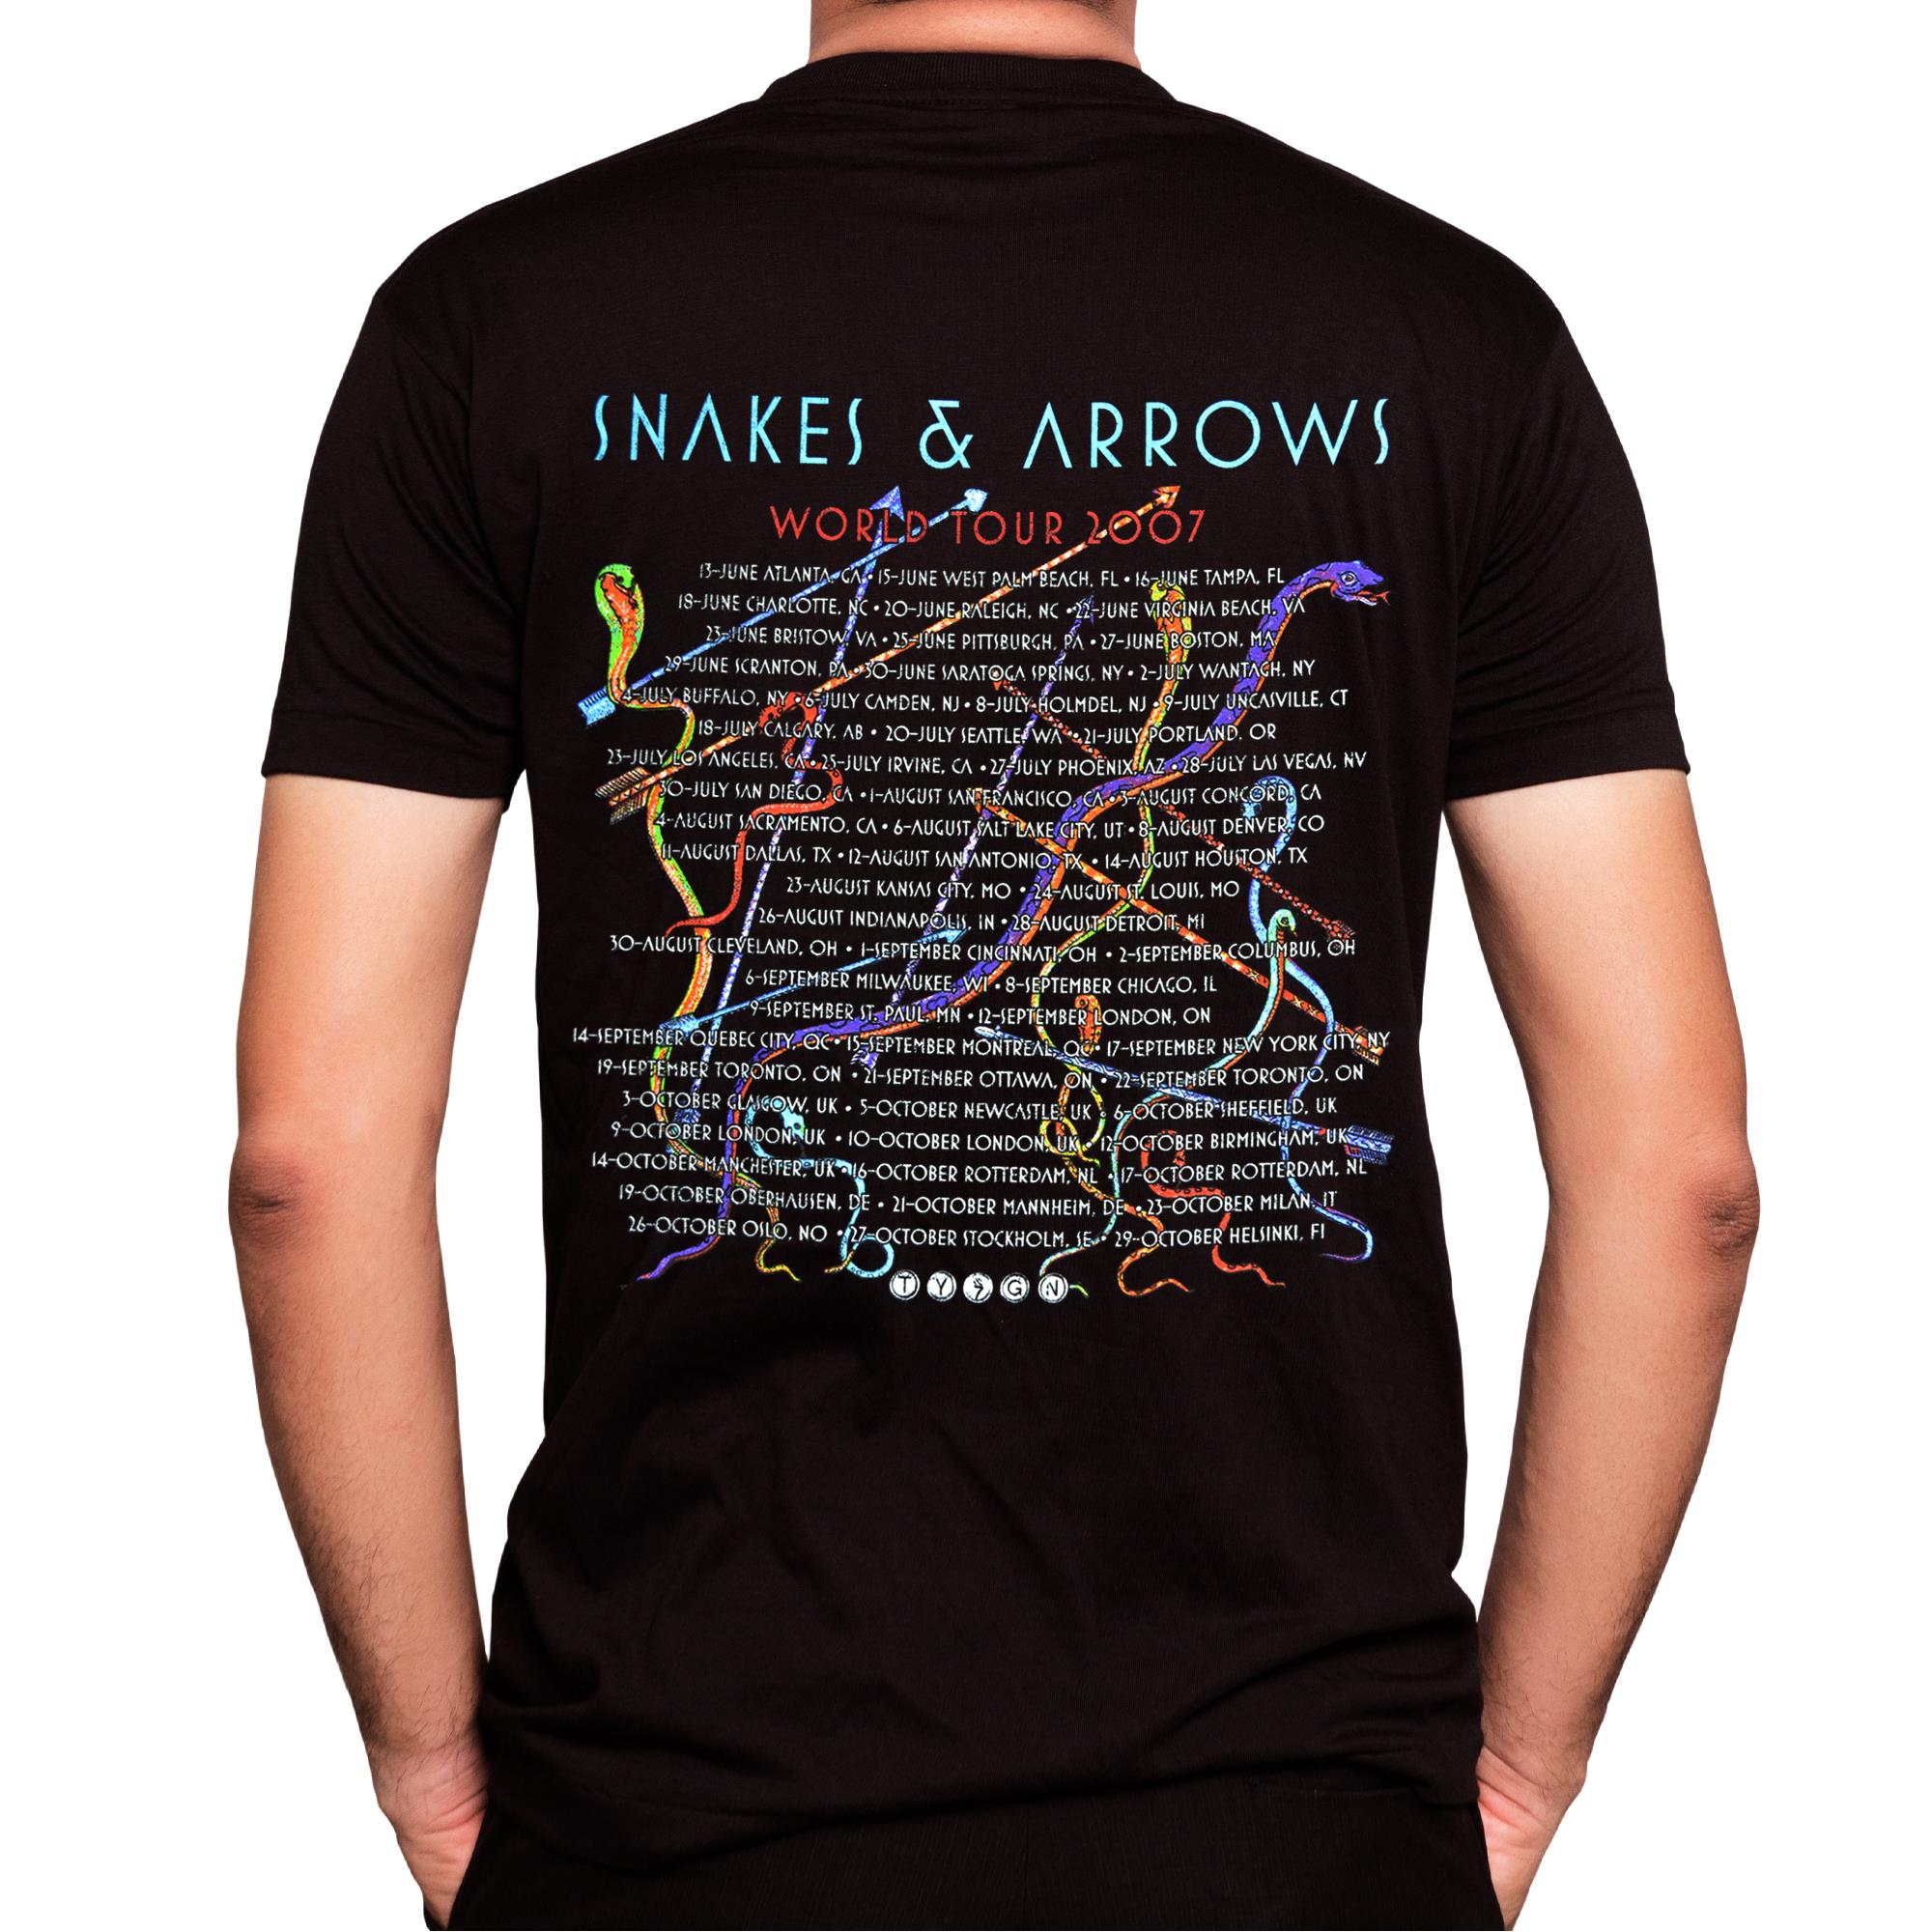 Snakes & Arrows Tour 2007 T-Shirt